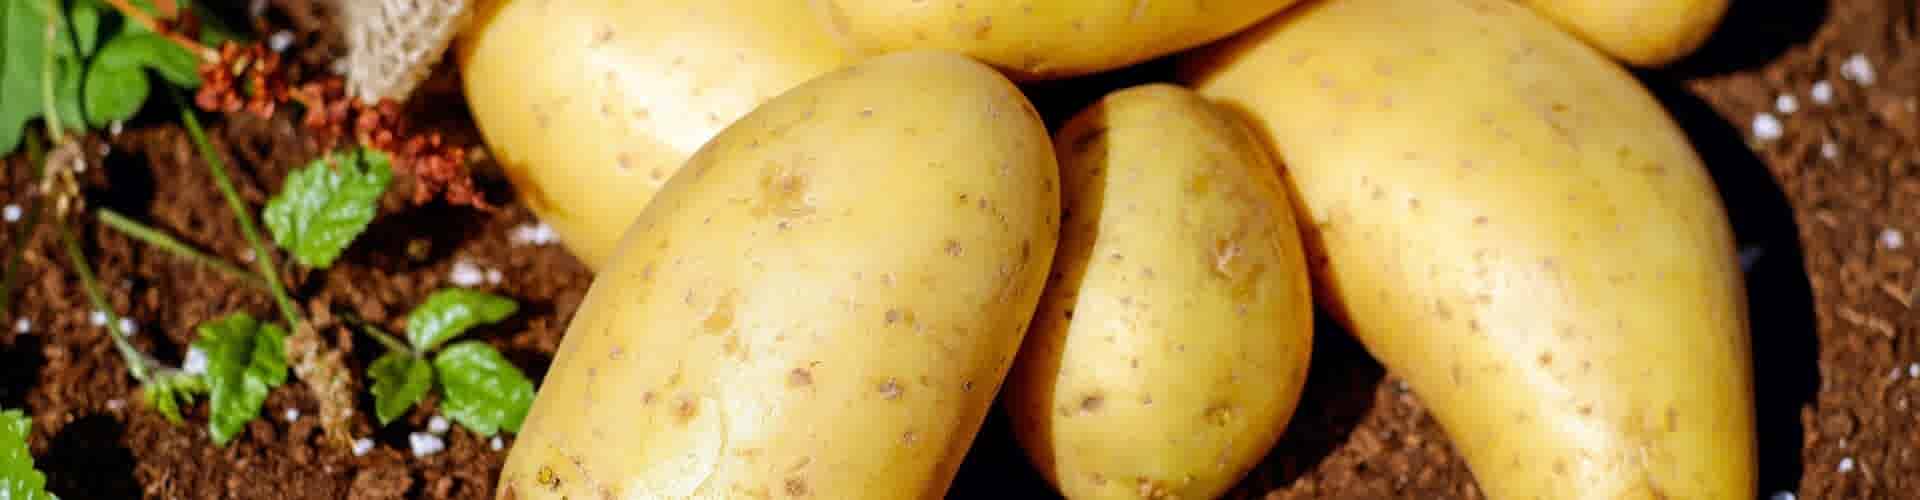 Online aardappelen bestellen: Hoe werkt het?